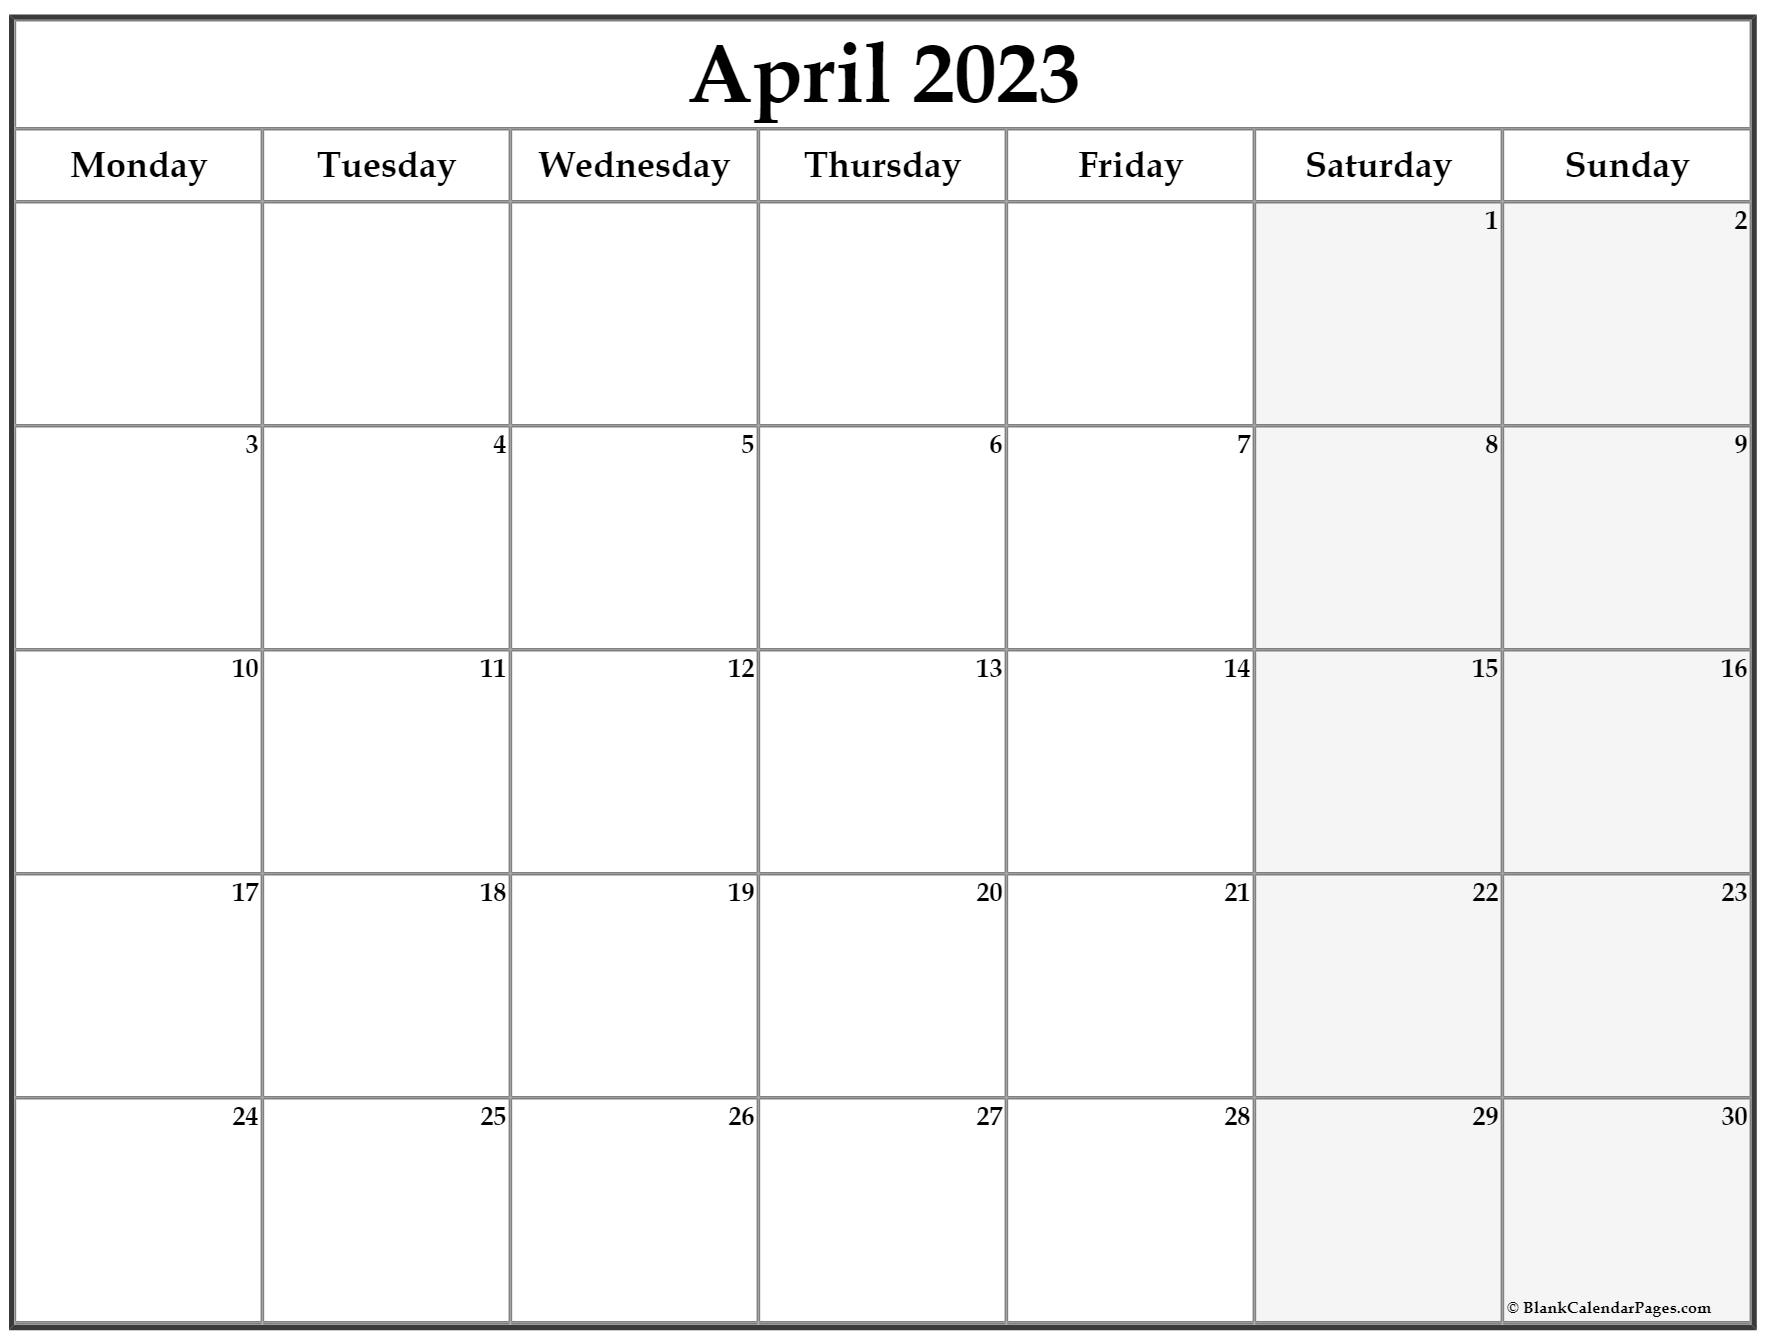 April 2023 Monday Calendar | Monday To Sunday